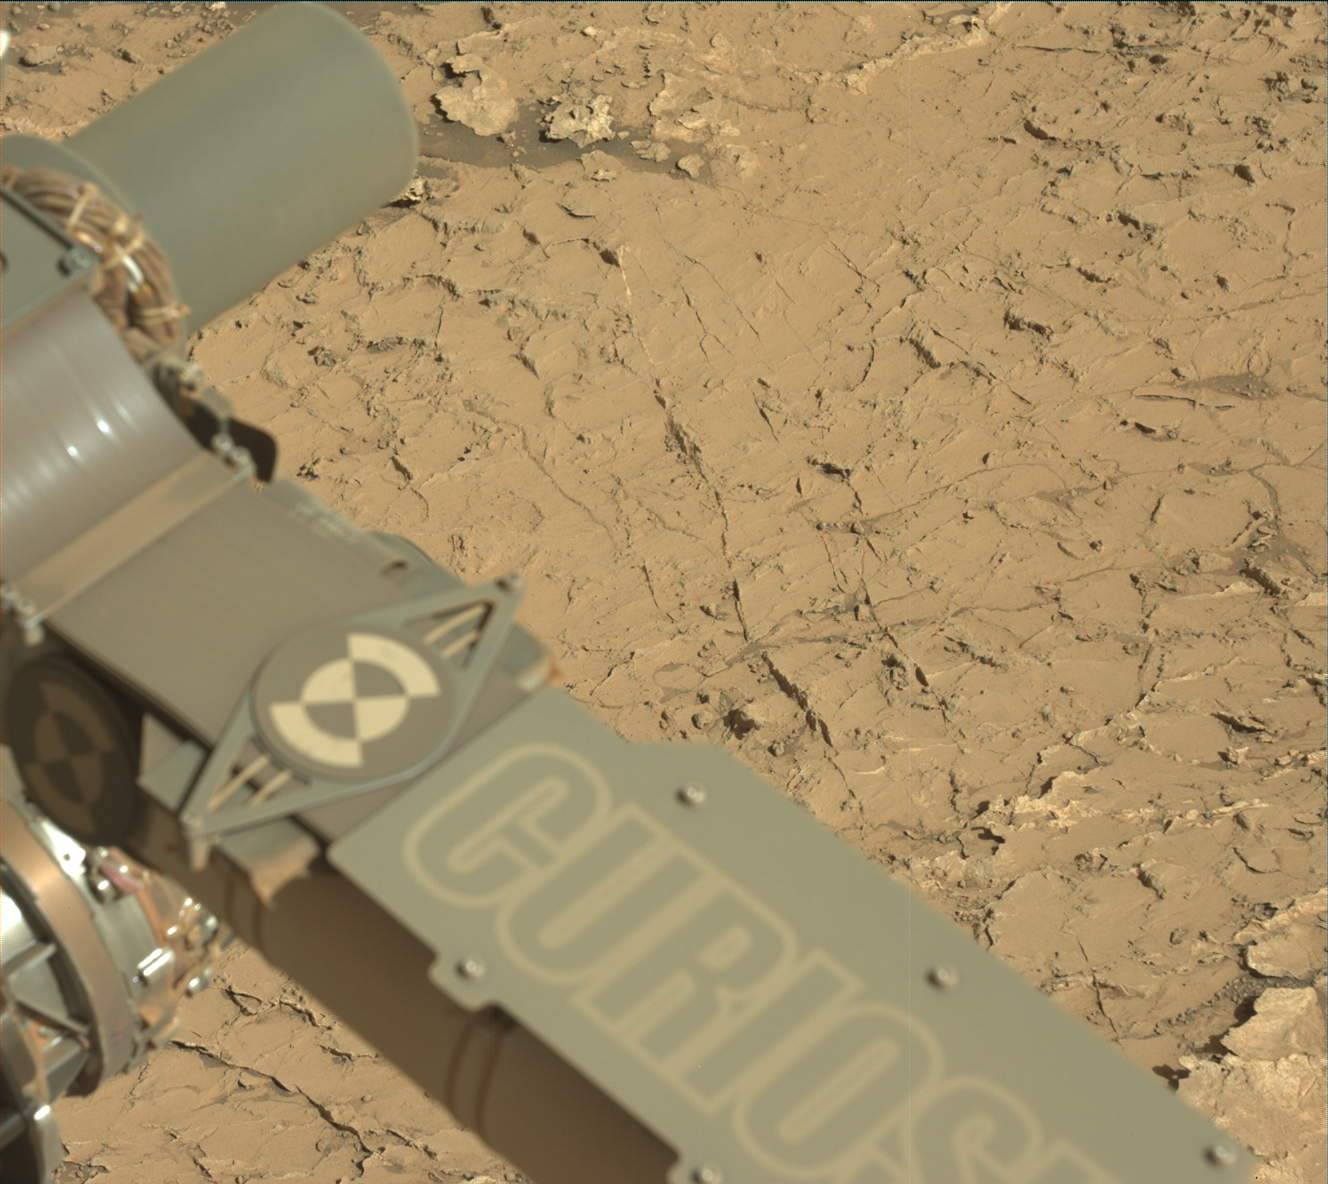 A poligonok a Curiosity robotkarja mögött, a marsjáró küldetésének 3154. marsi napján